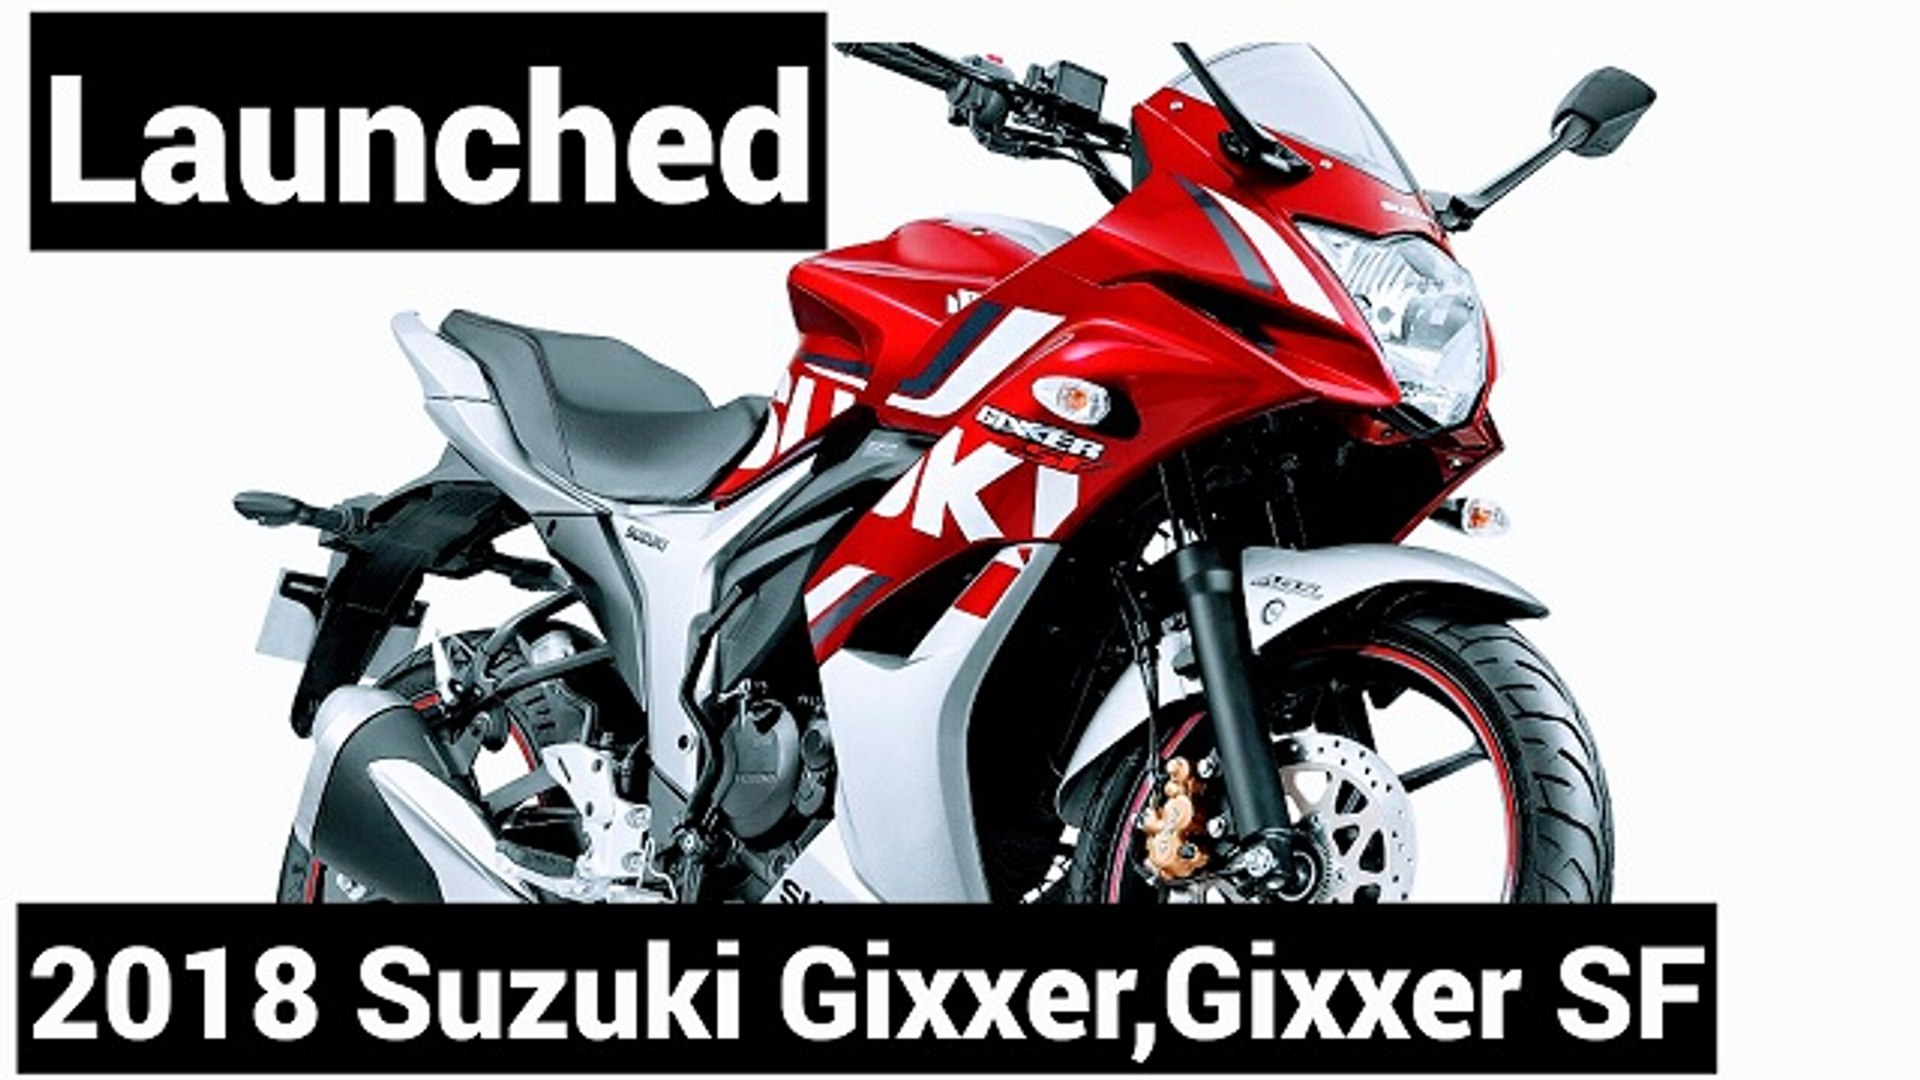 2018 Suzuki Gixxer, Gixxer Sf Priced At Rs 80,928 And - Suzuki 155 Gixxer 2019 , HD Wallpaper & Backgrounds